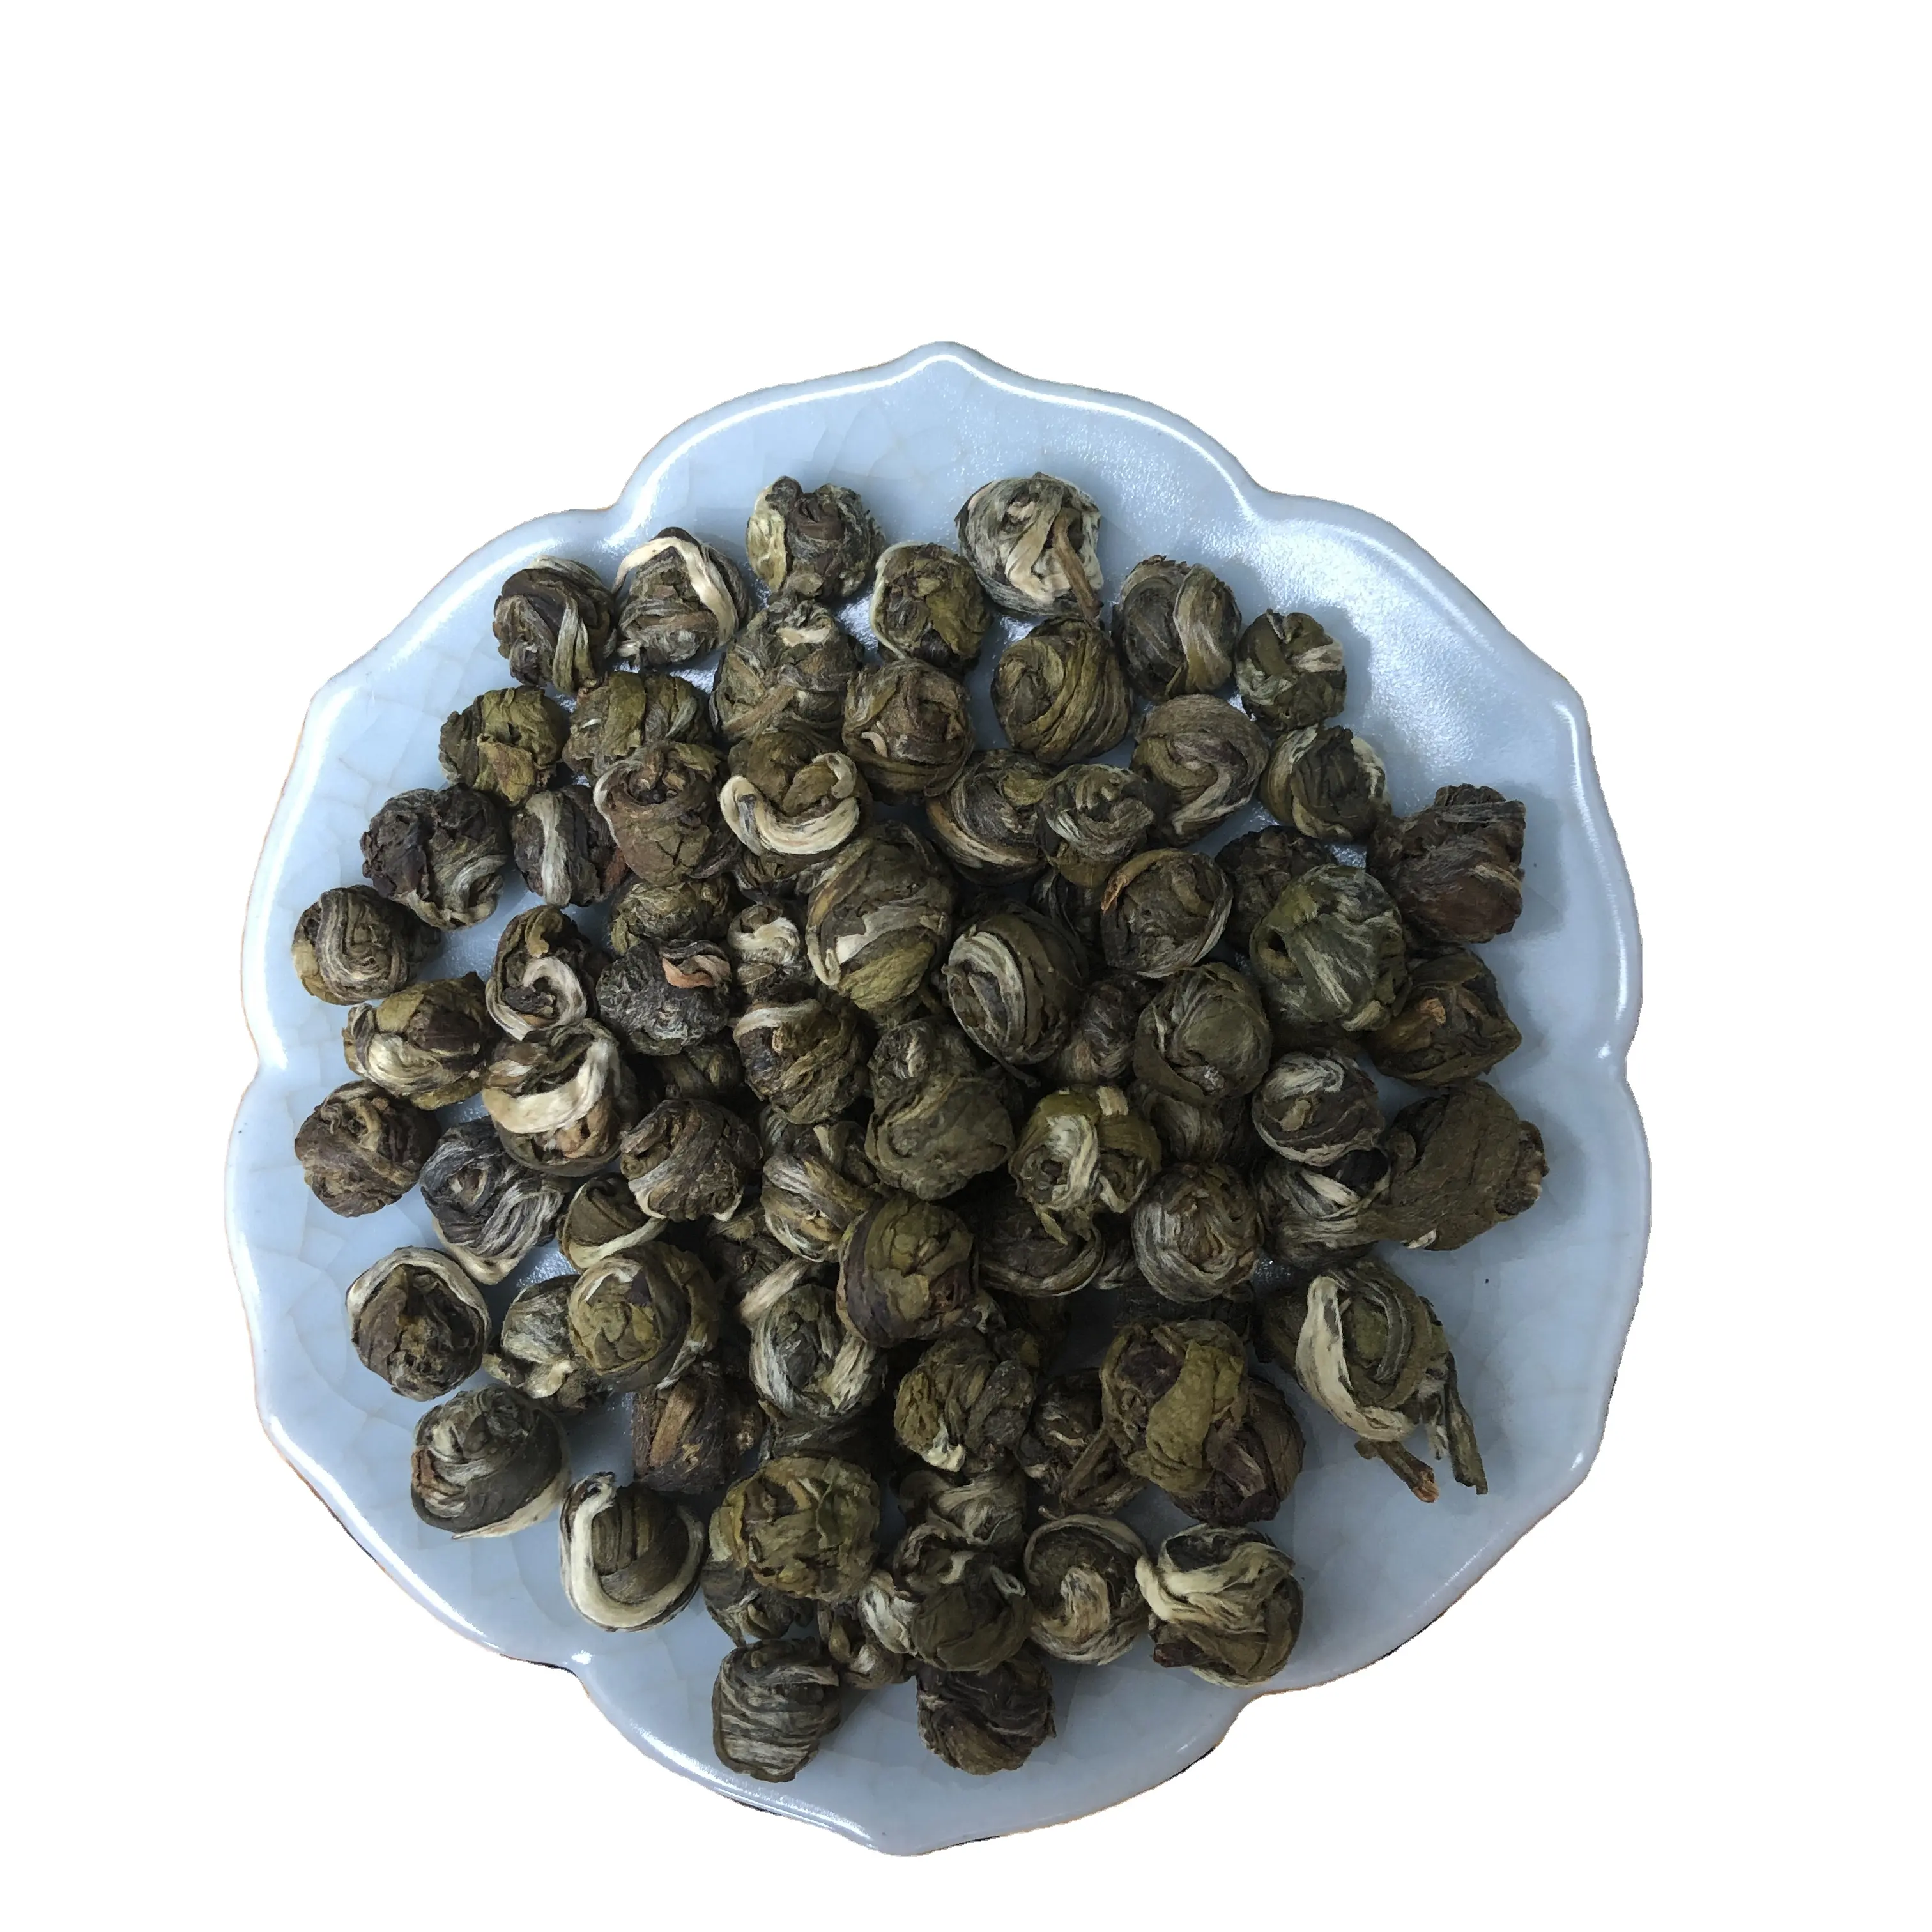 Thé aux perles de jasmin thé au dragon aux perles de jasmin thé au jasmin chinois bon arôme de jasmin de haute qualité